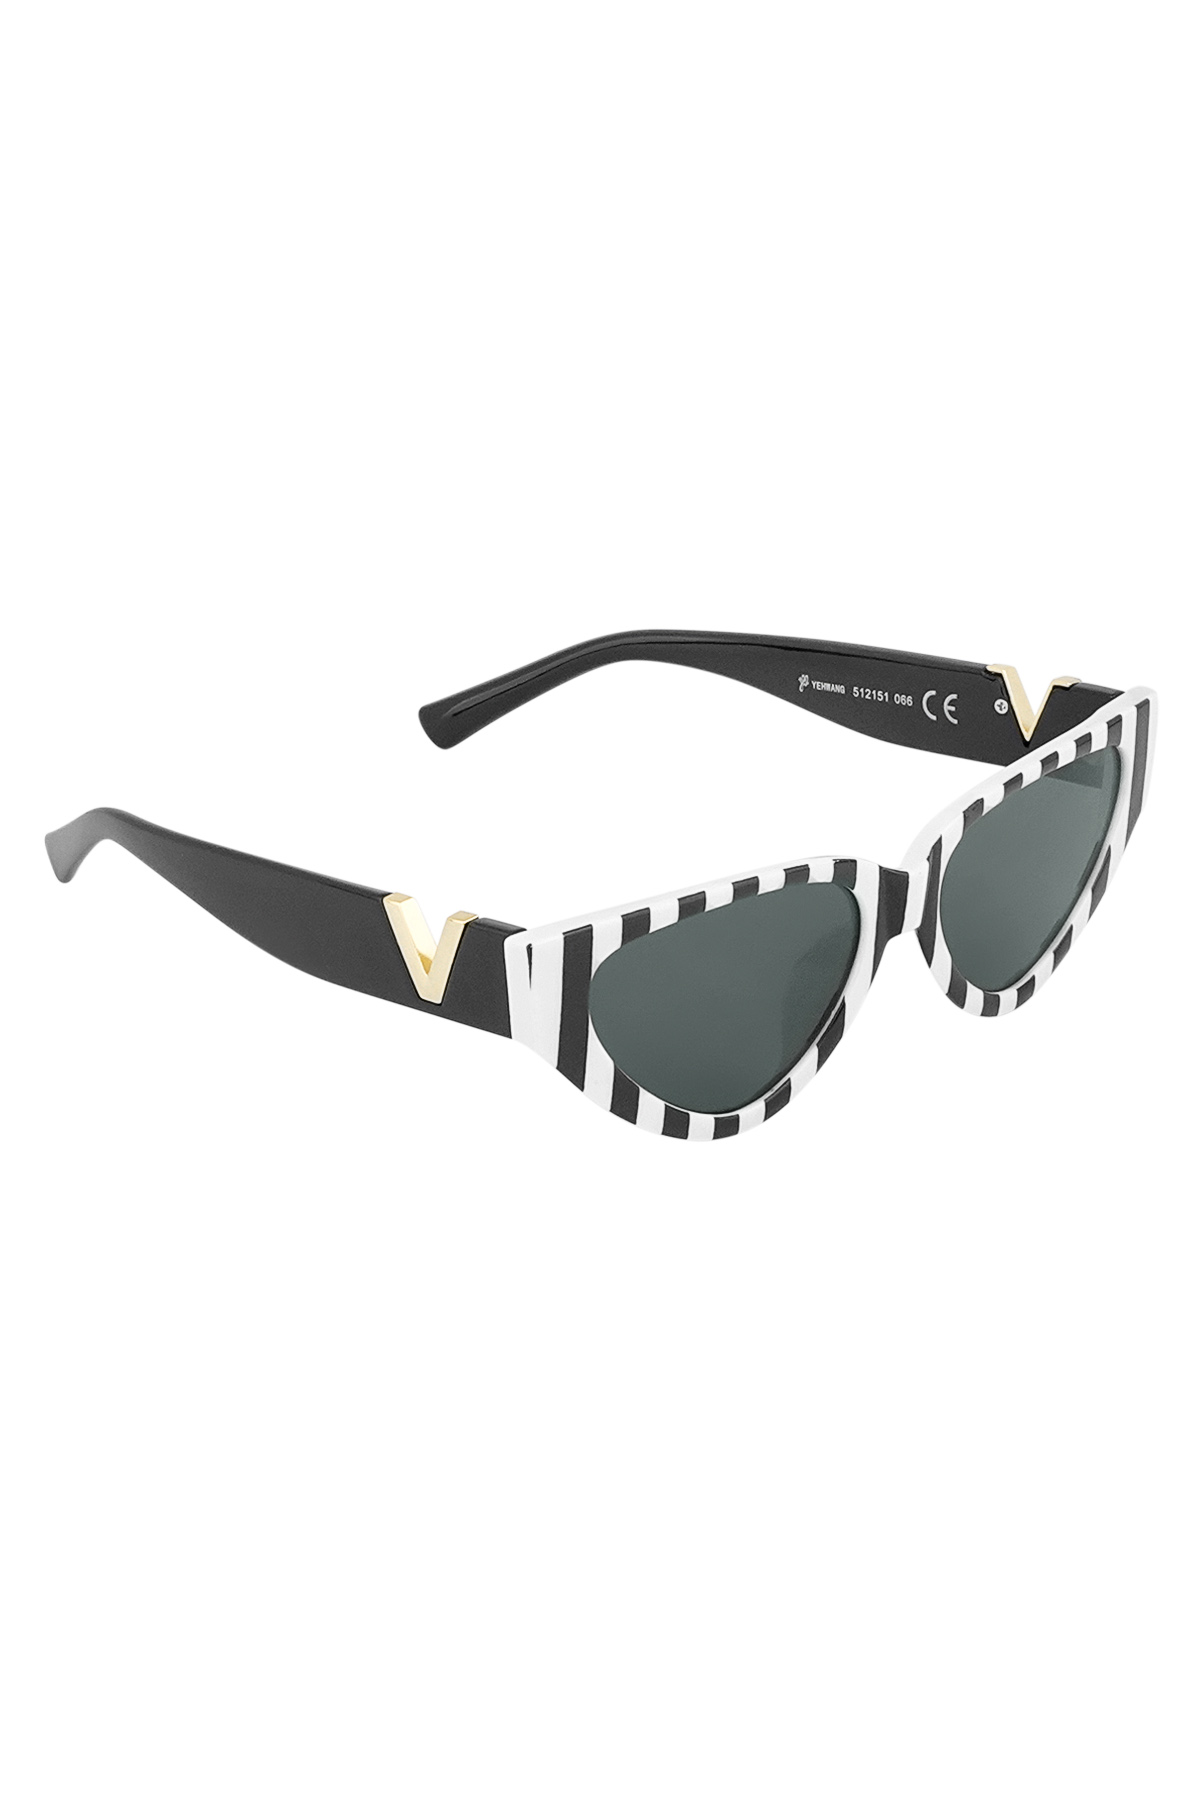 V statement sunglasses - black and white